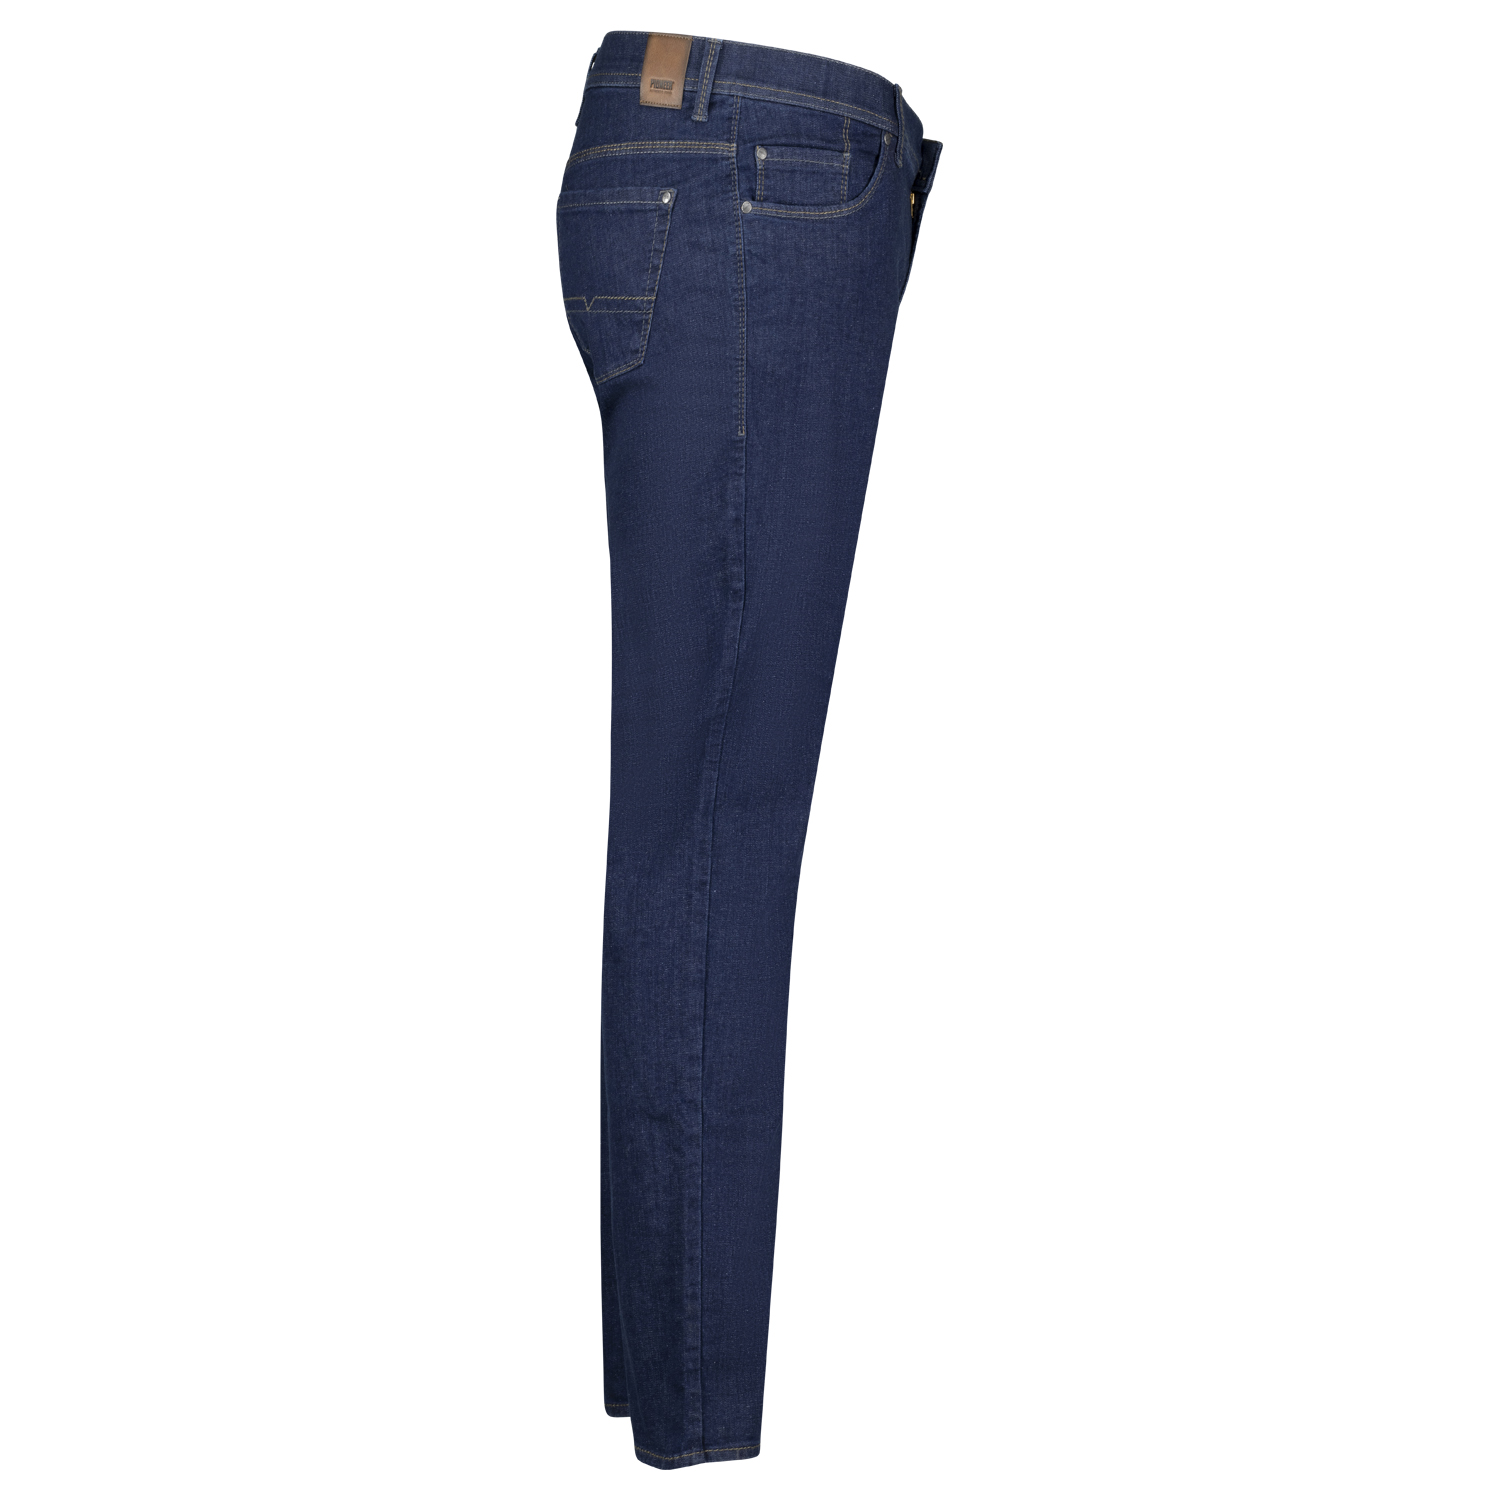 5-Pocket Jeans untersetzte Größen Modell "Thomas" Megaflex von Pioneer in 28 - 40 dark blue stonewash